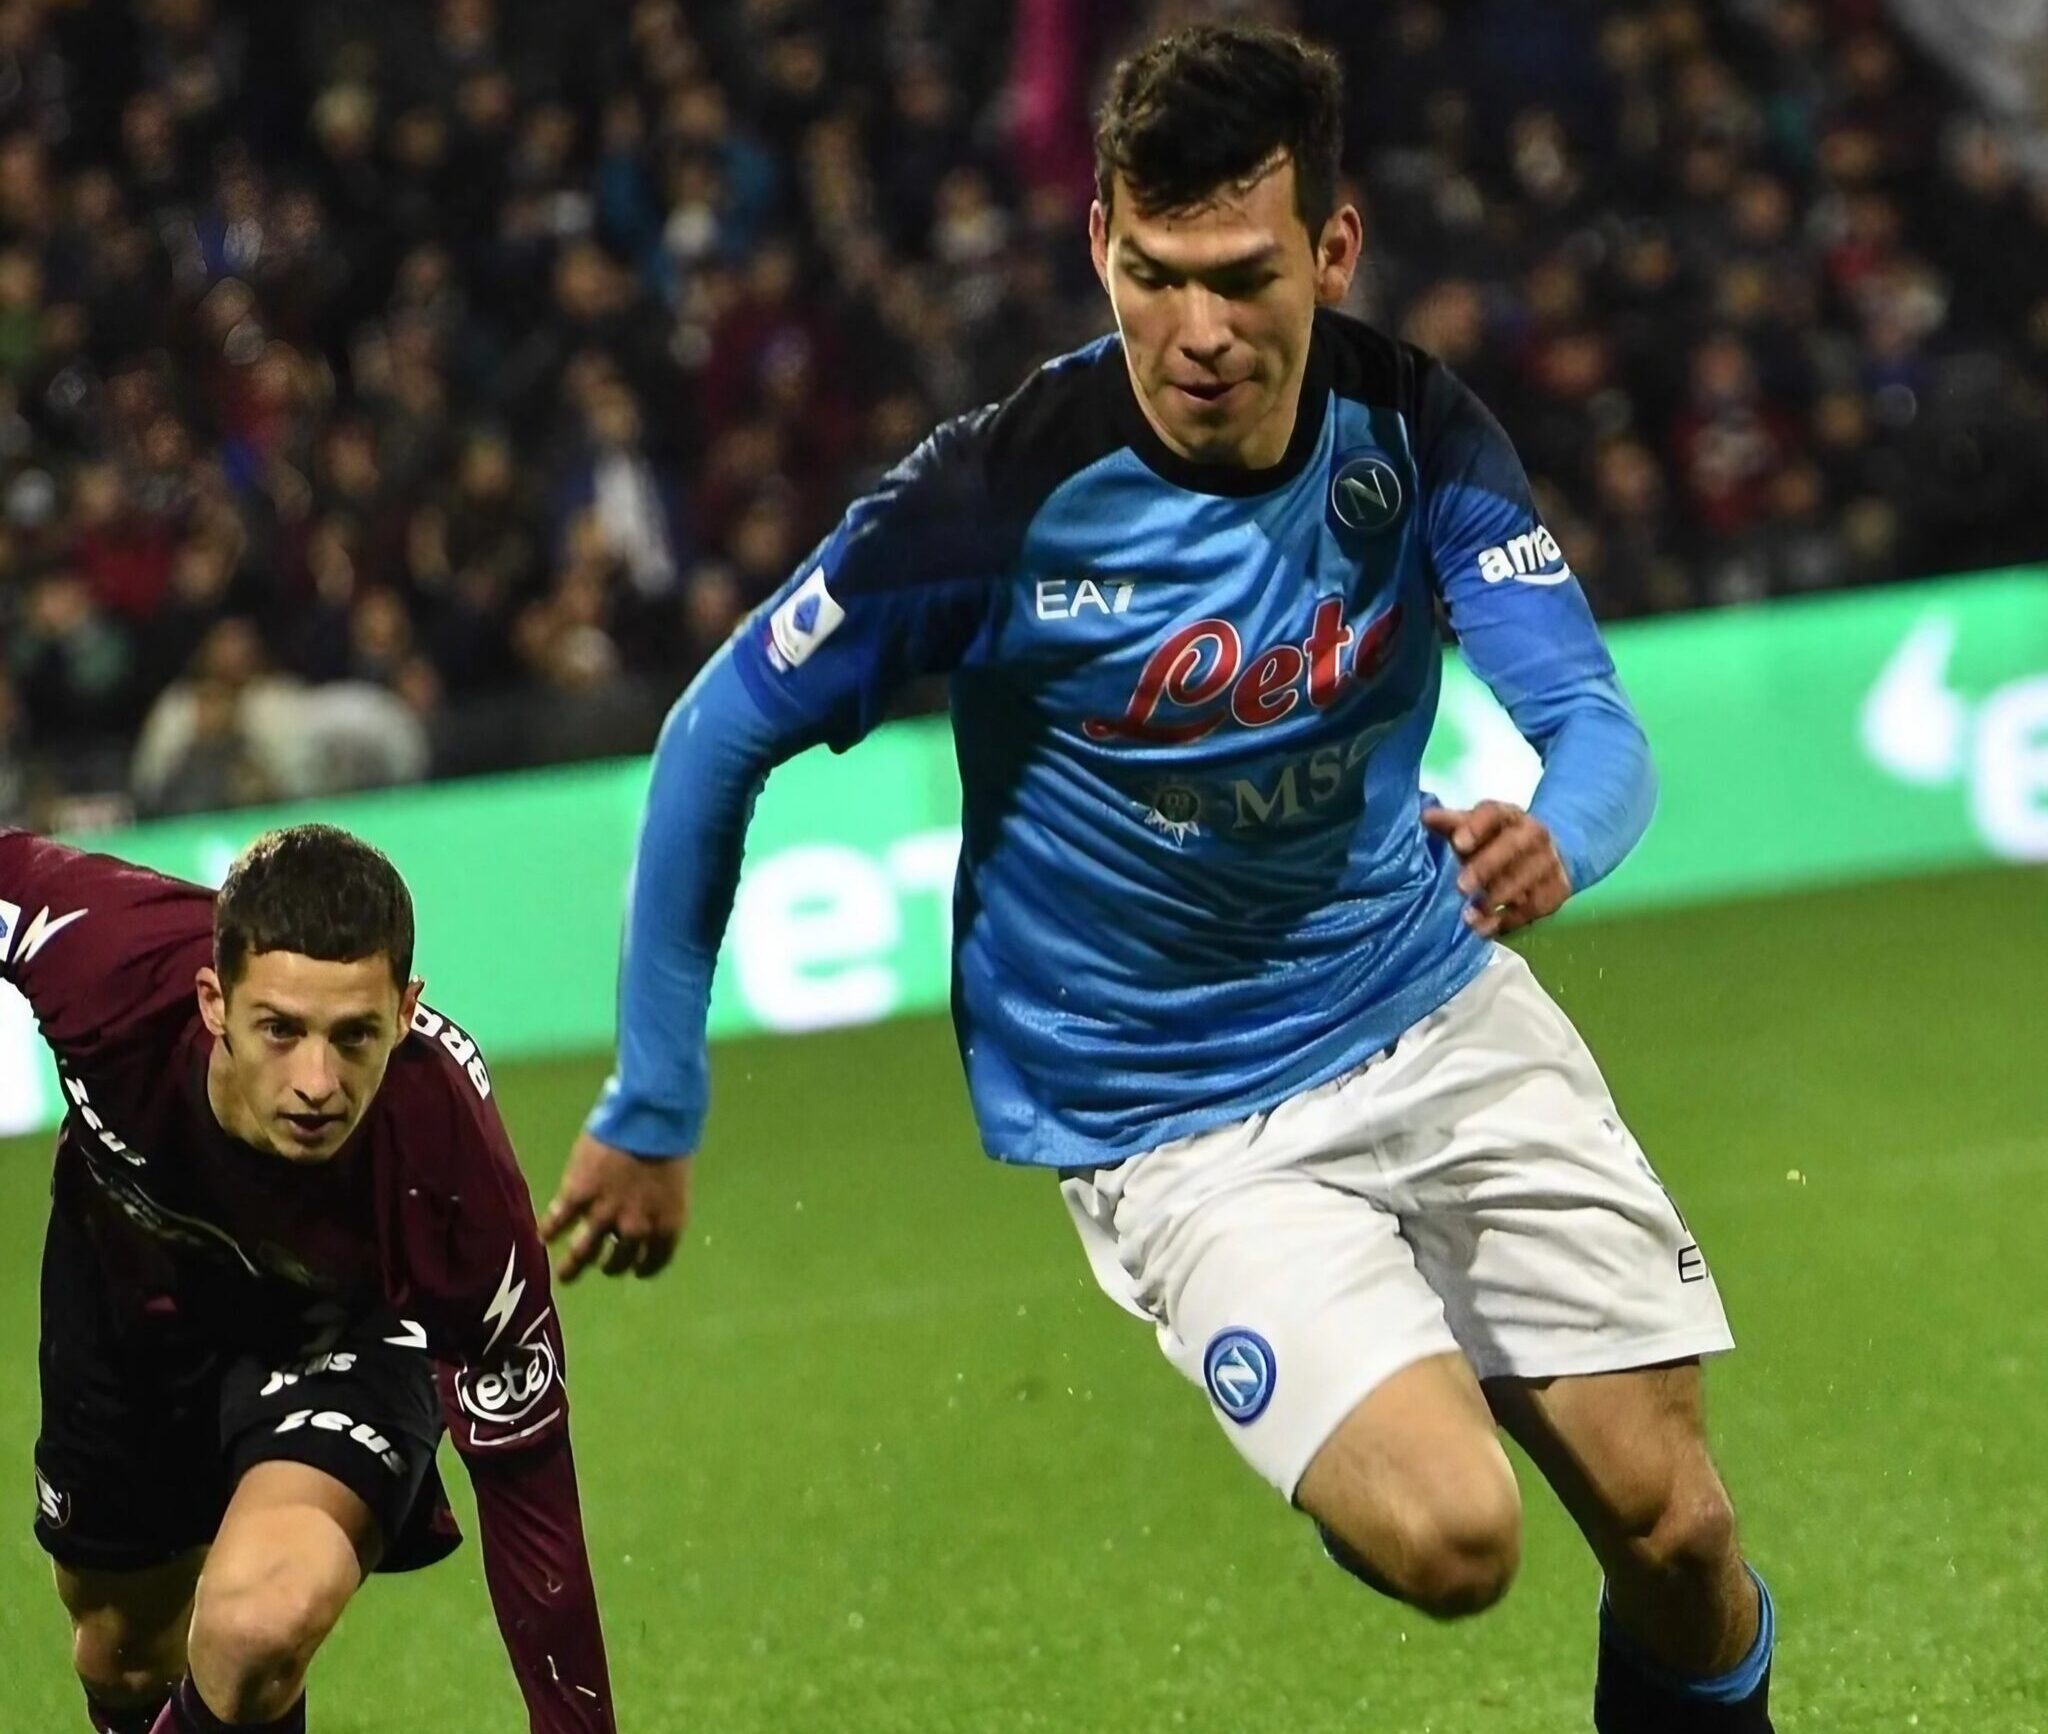 Lozano, calciatore SSC Napoli, in azione contro un calciatore della Salernitana